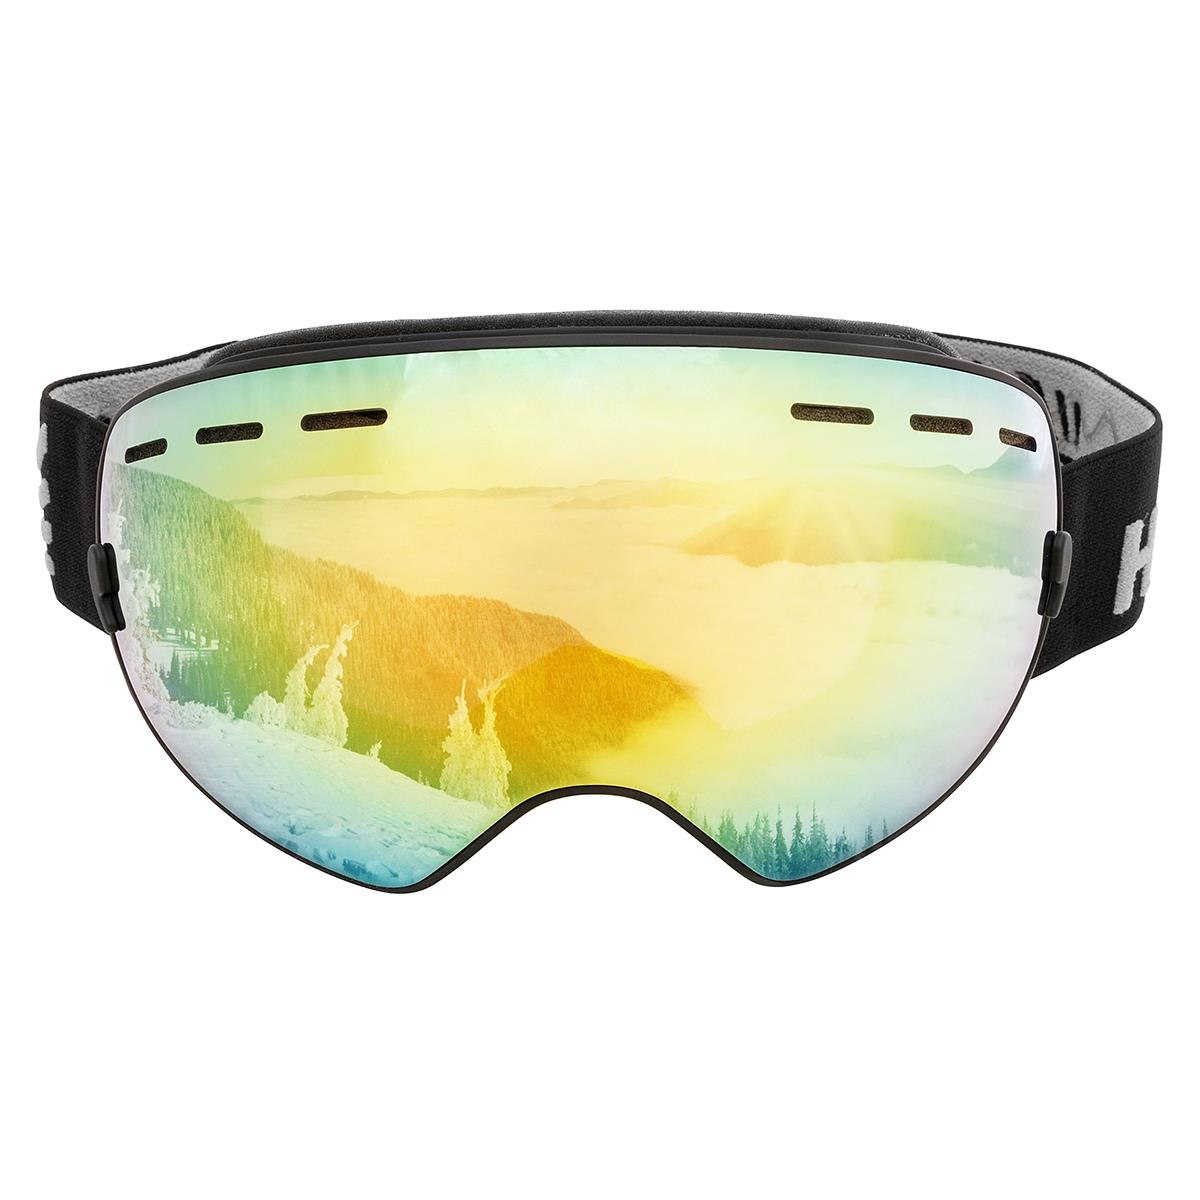 Очки горнолыжные HS-HX-003-1 Helios очки полумаска для плавания с берушами детские uv защита